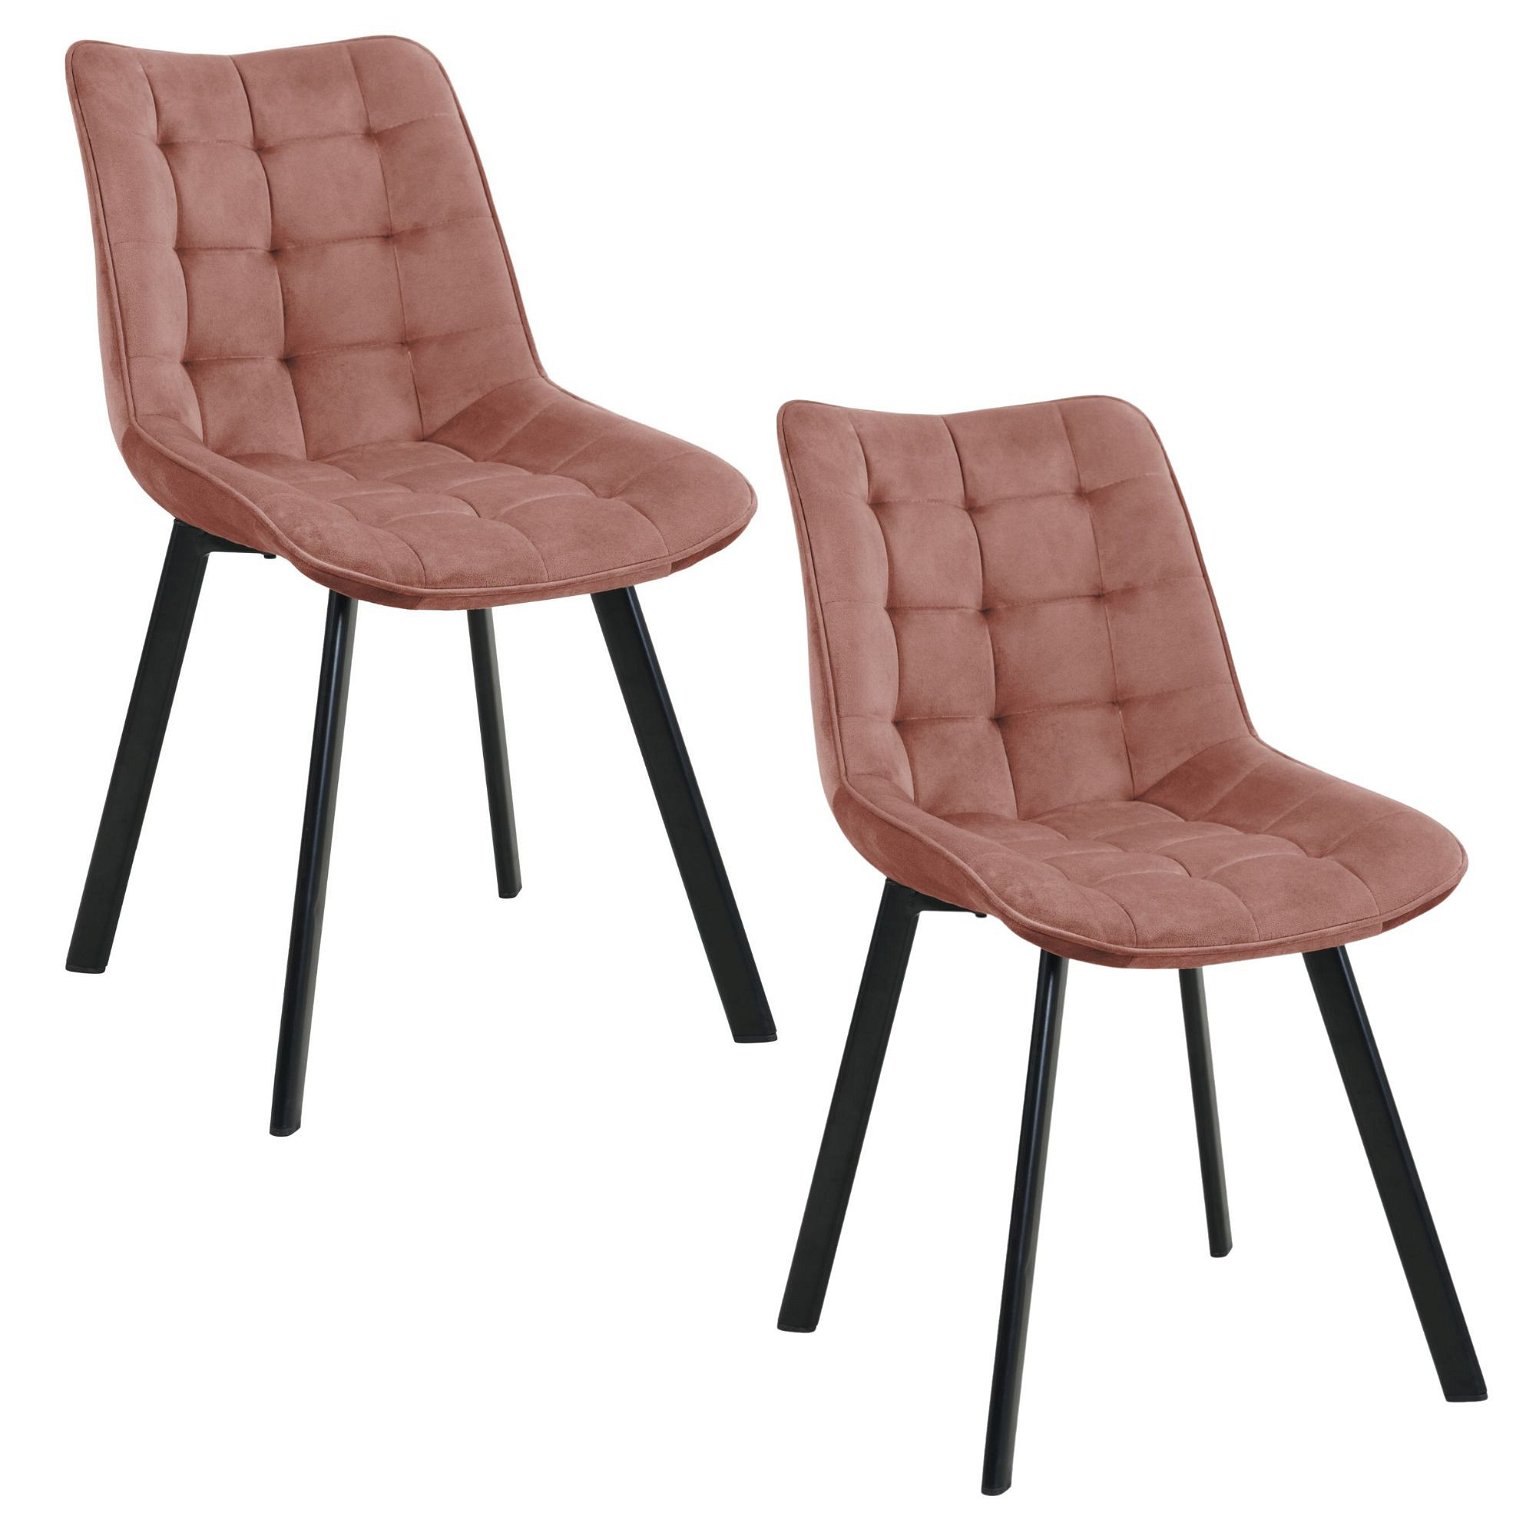 2-ių kėdžių komplektas SJ.28, rožinė